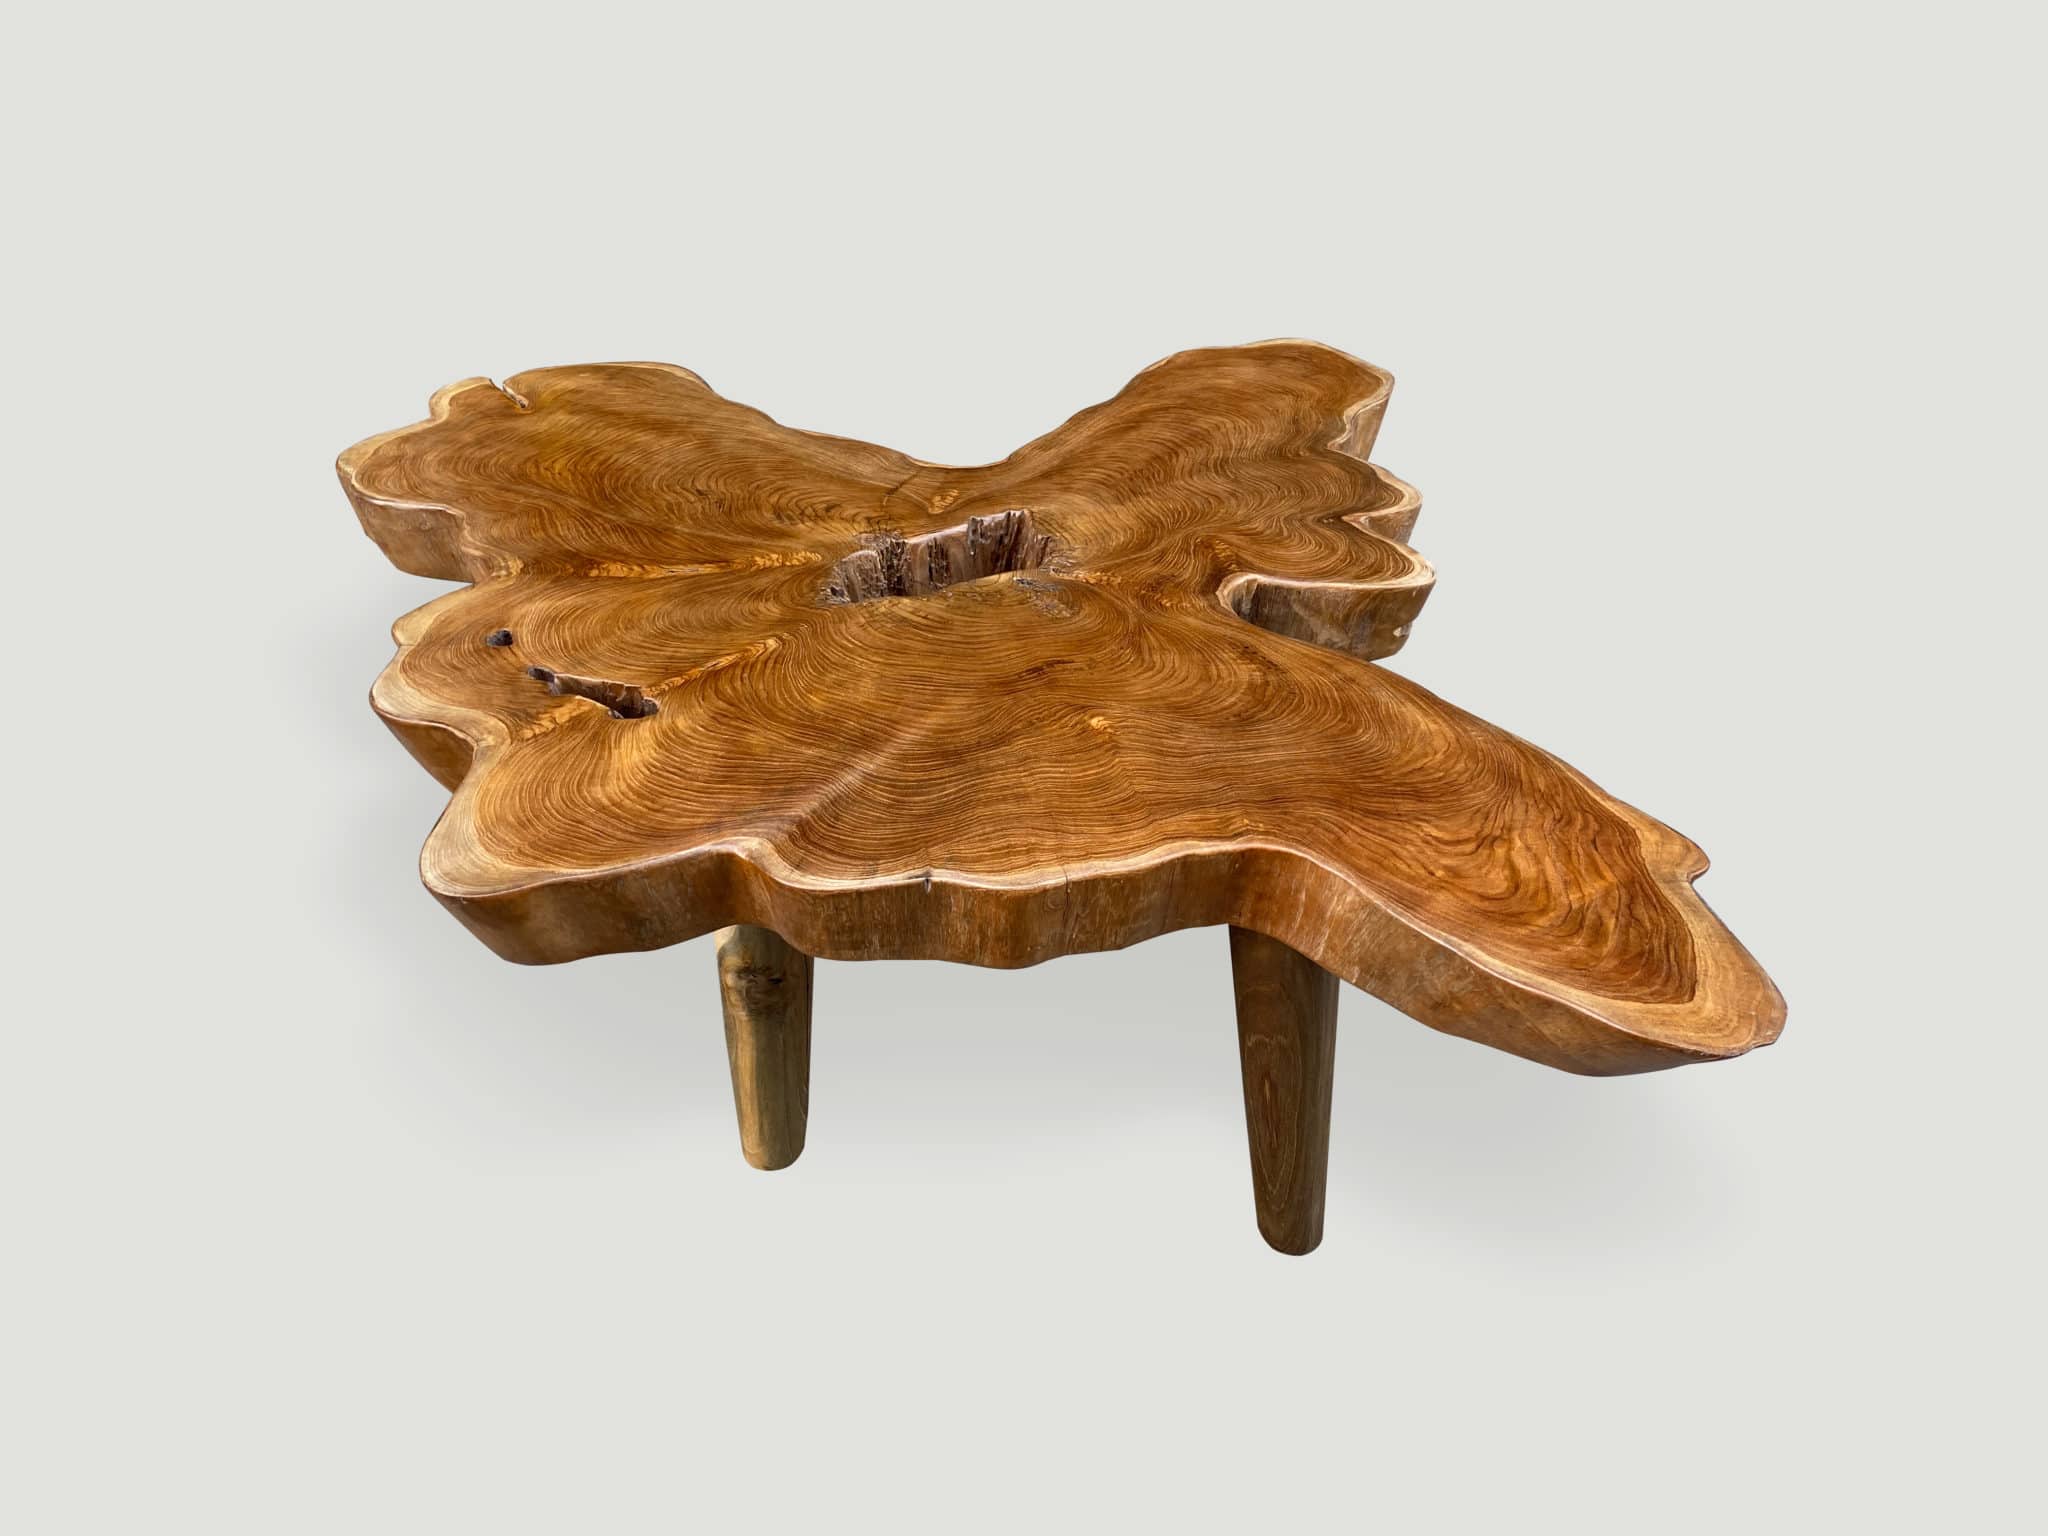 live edge teak wood coffee table